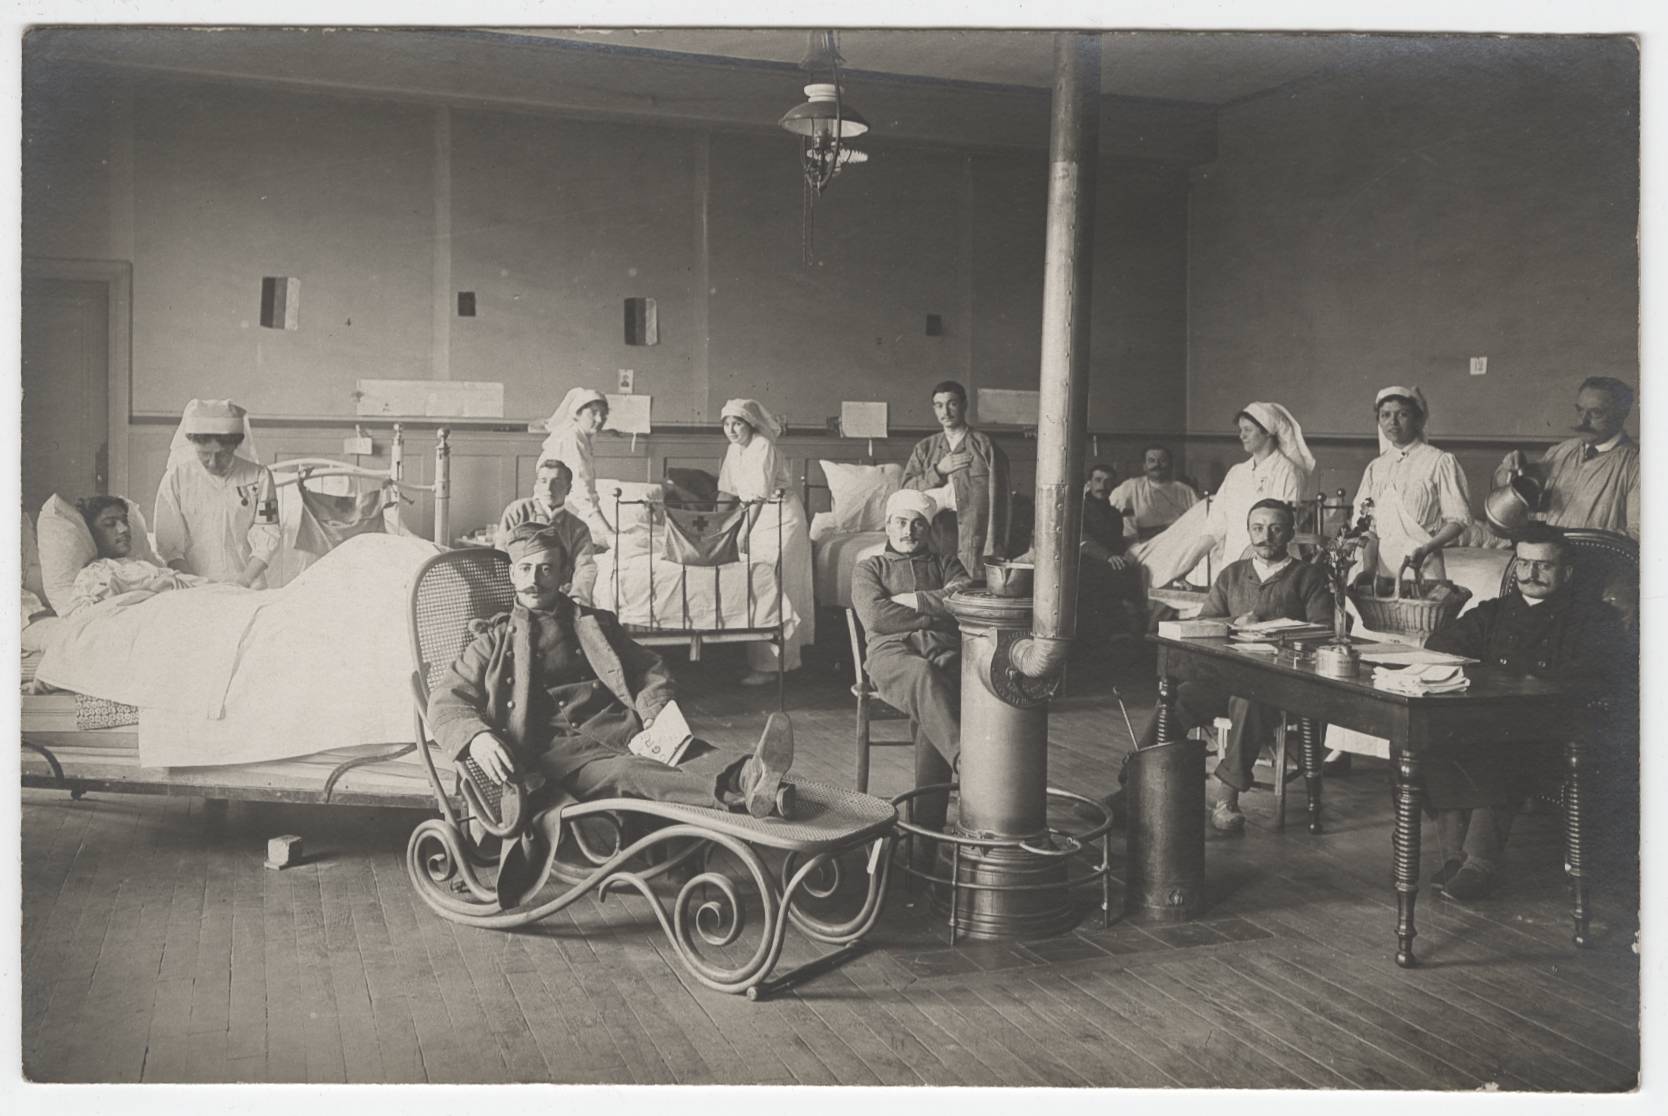 Guerre de 1914-1918 - L'hôpital auxiliaire 101, école vétérinaire : carte postale NB (1914-1918, cote : 4FI/4953)